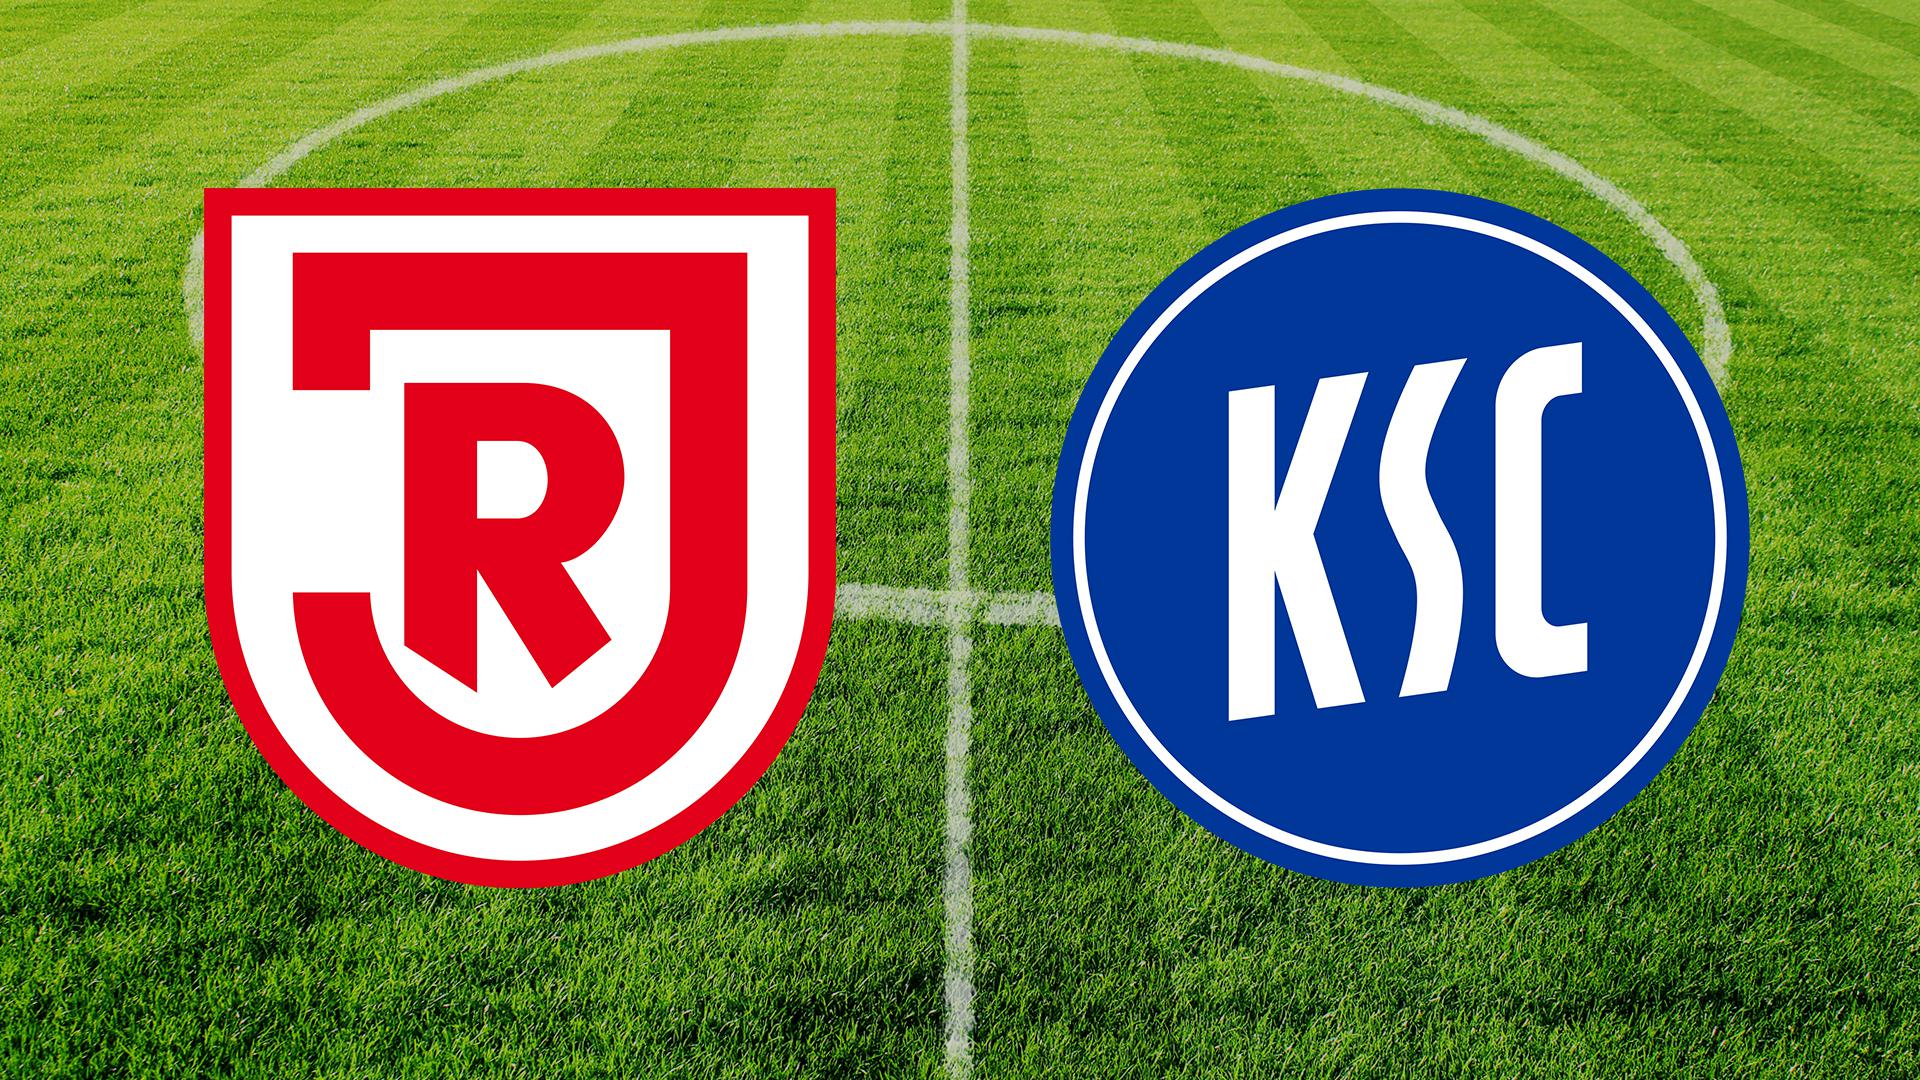 Logos der Zweitliga-Mannschaften SSV Jahn Regensburg und Karlsruher SC vor einem Fußballrasen.